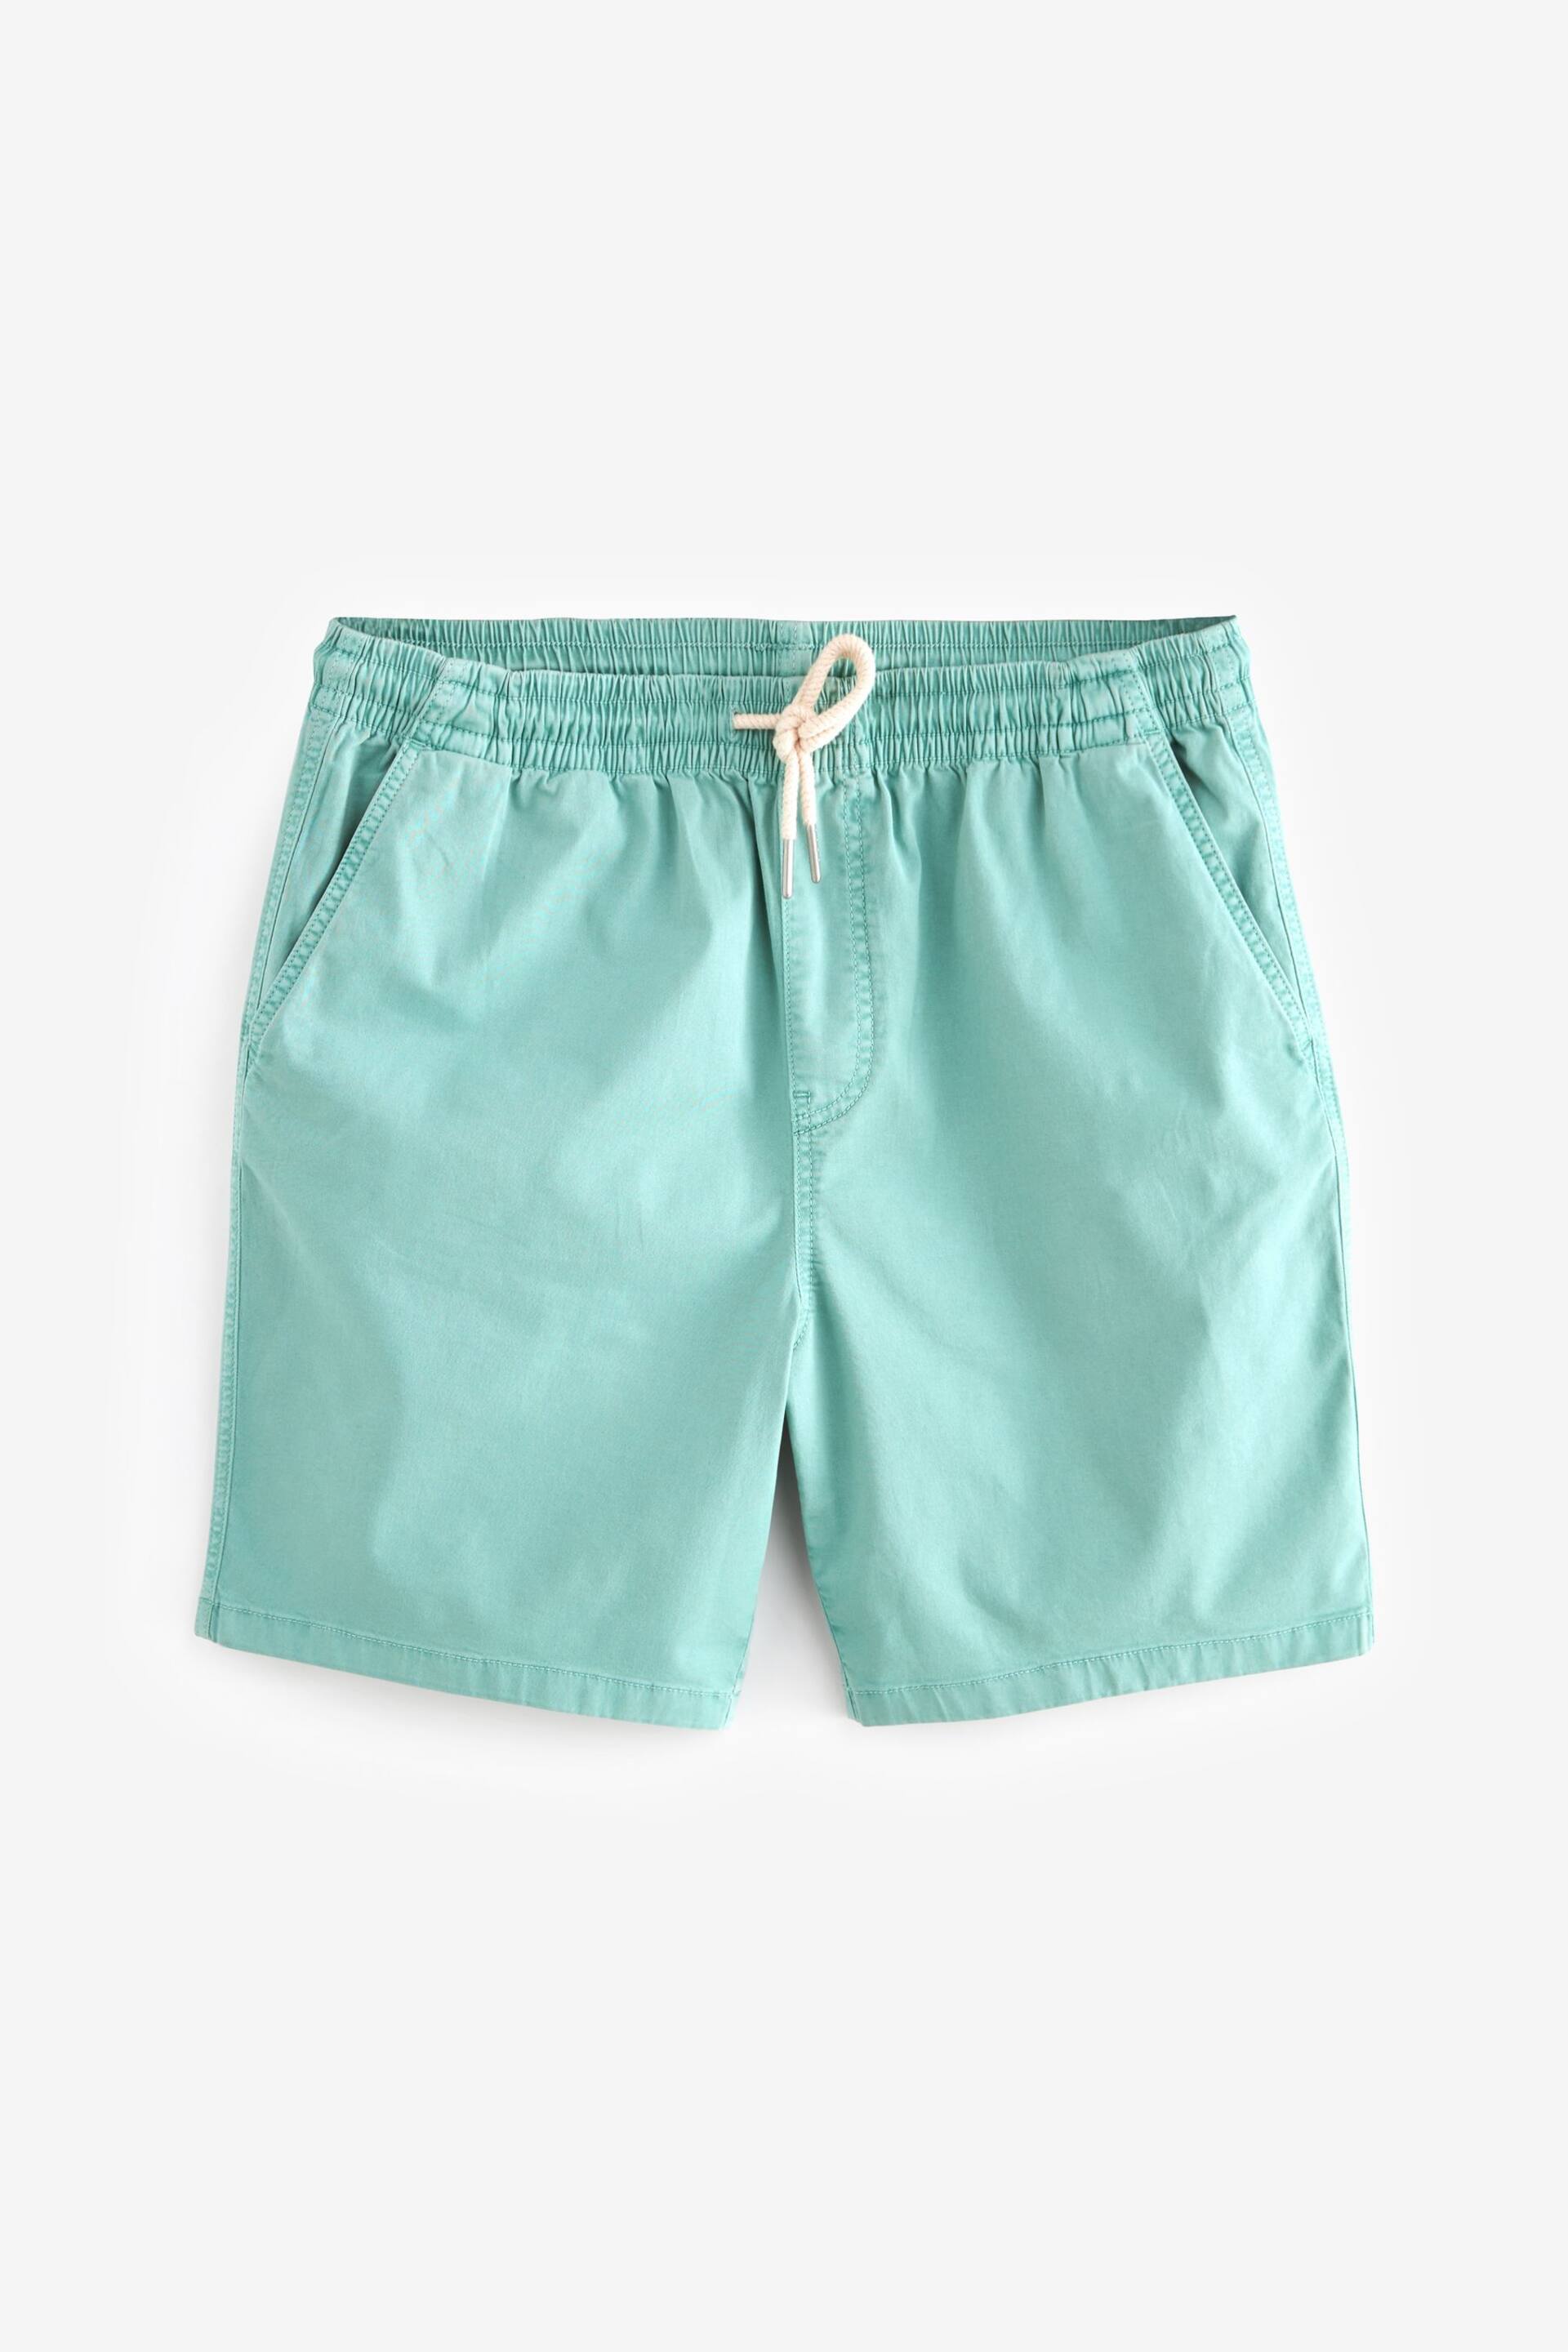 Aqua Blue Washed Cotton Elasticated Waist Shorts - Image 6 of 10